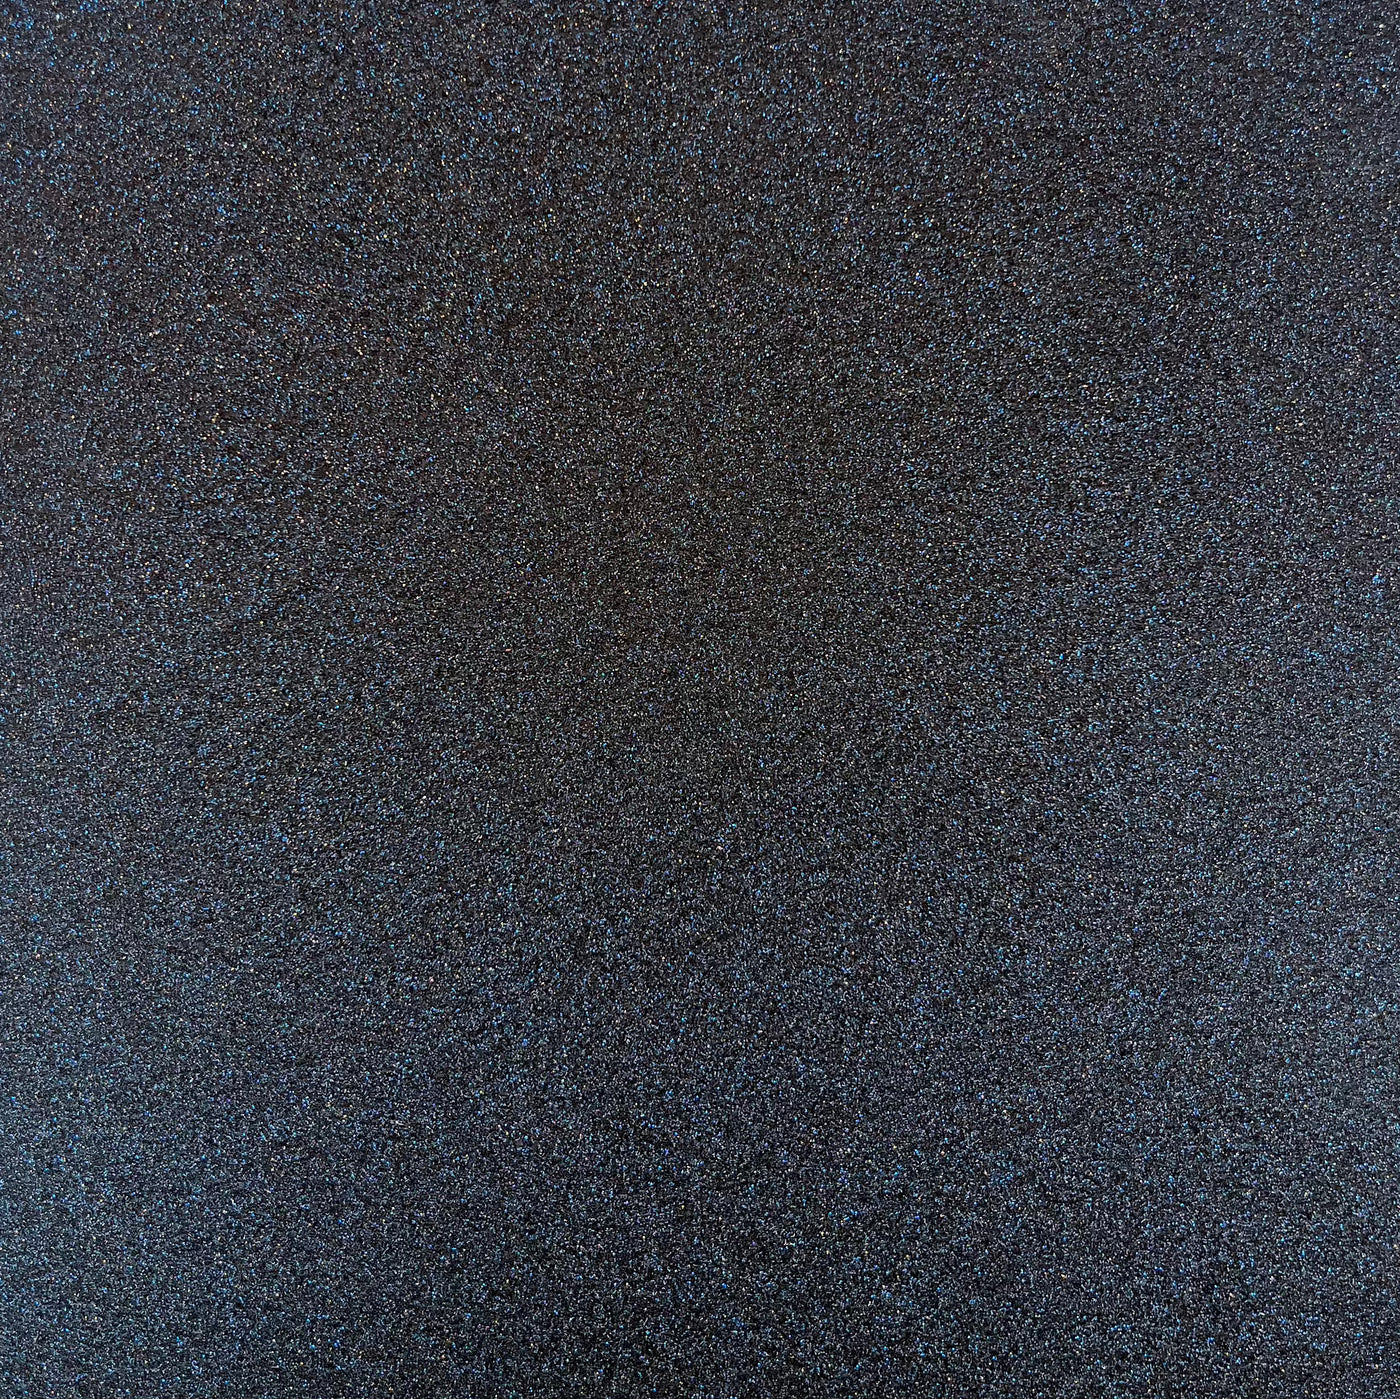 Midnight Sky Glitter Luxe cardstock - High-shine black glitter cardstock with flecks of blue glitter